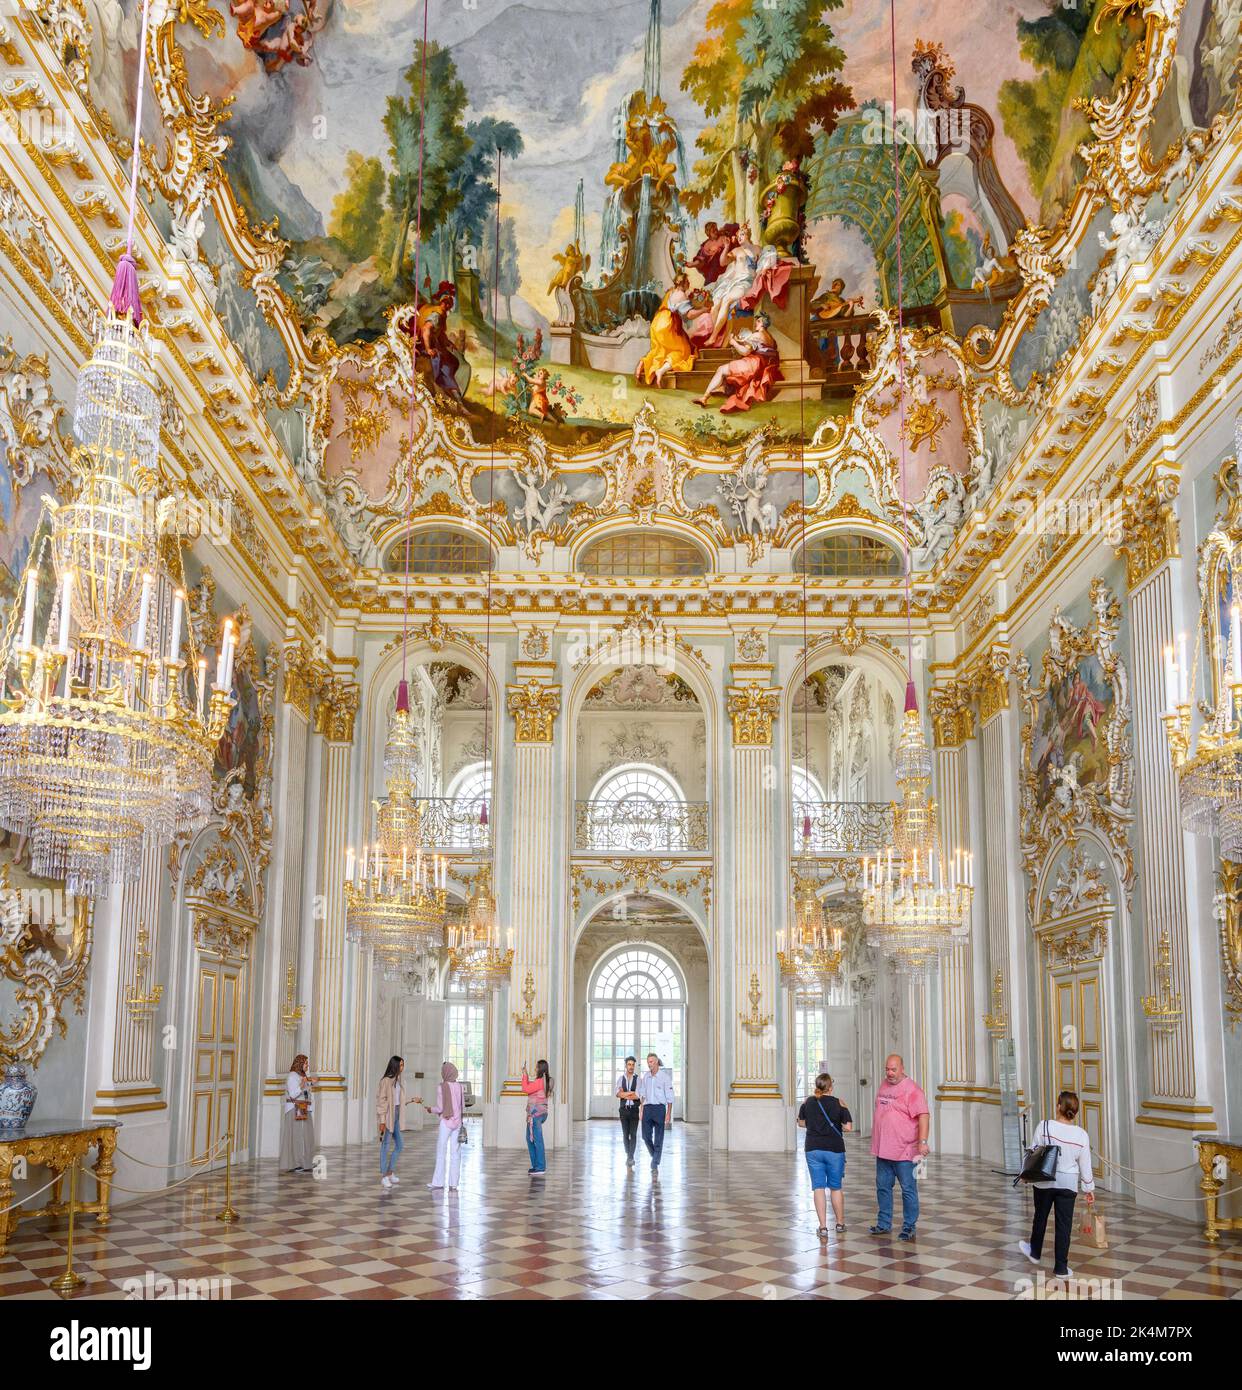 Steinerner Saal (Marble Hall) en el interior del Palacio de Nymphenburg (Schloss Nymphenburg), Munich, Baviera, Alemania Foto de stock